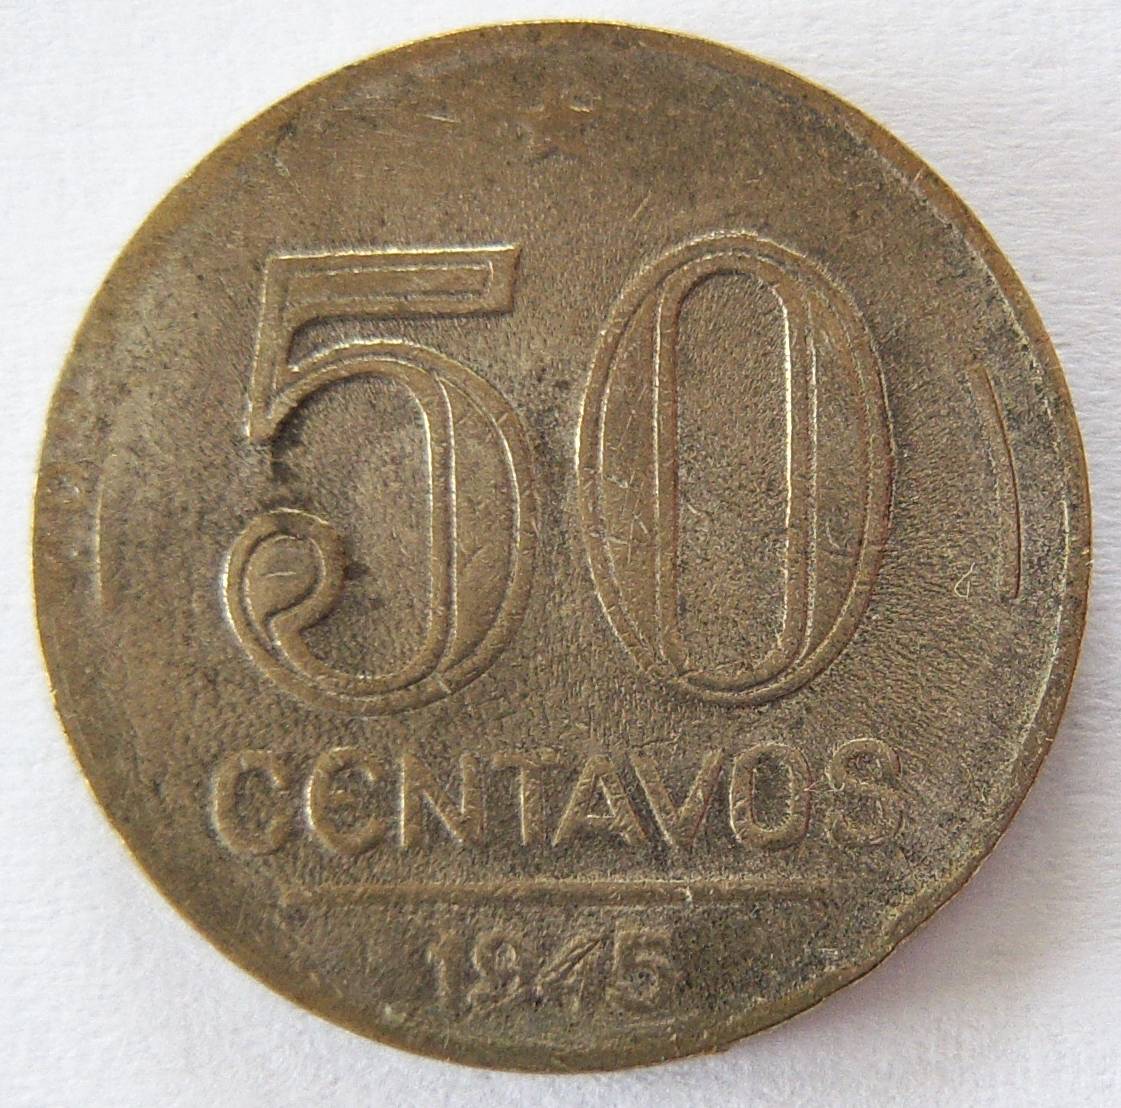  Brasilien 50 Centavos 1945   